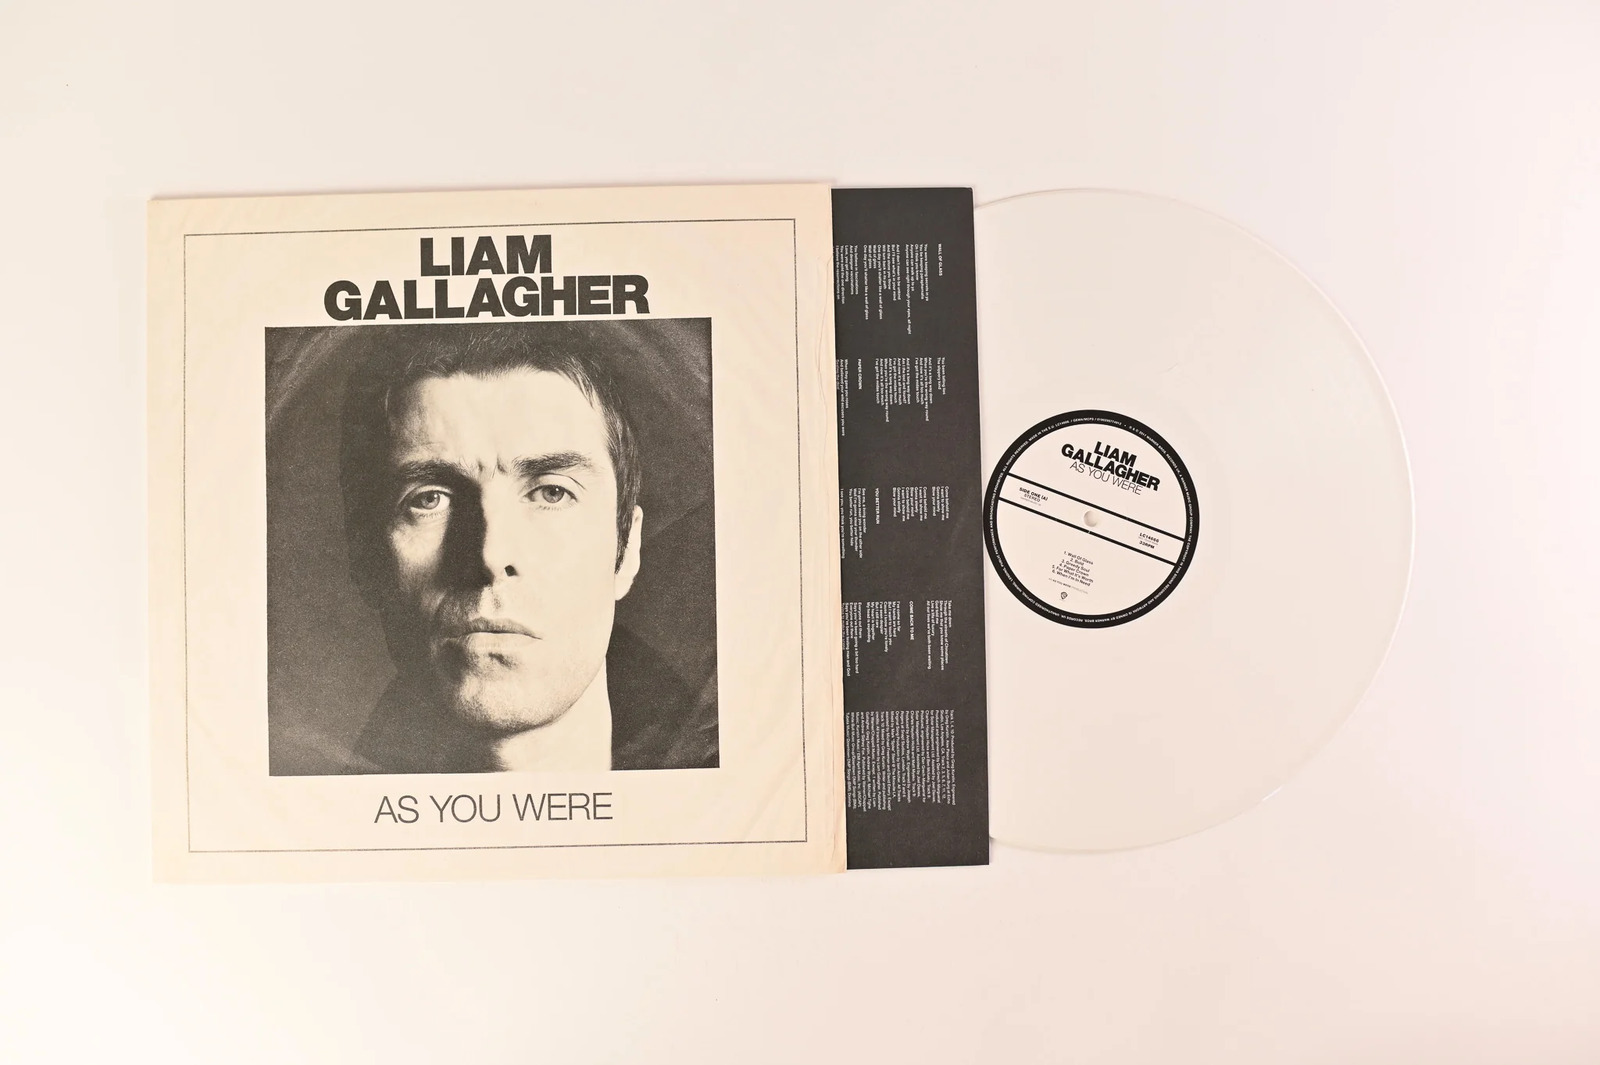 Liam Gallagher - As You Were on Warner Bros Ltd White Vinyl